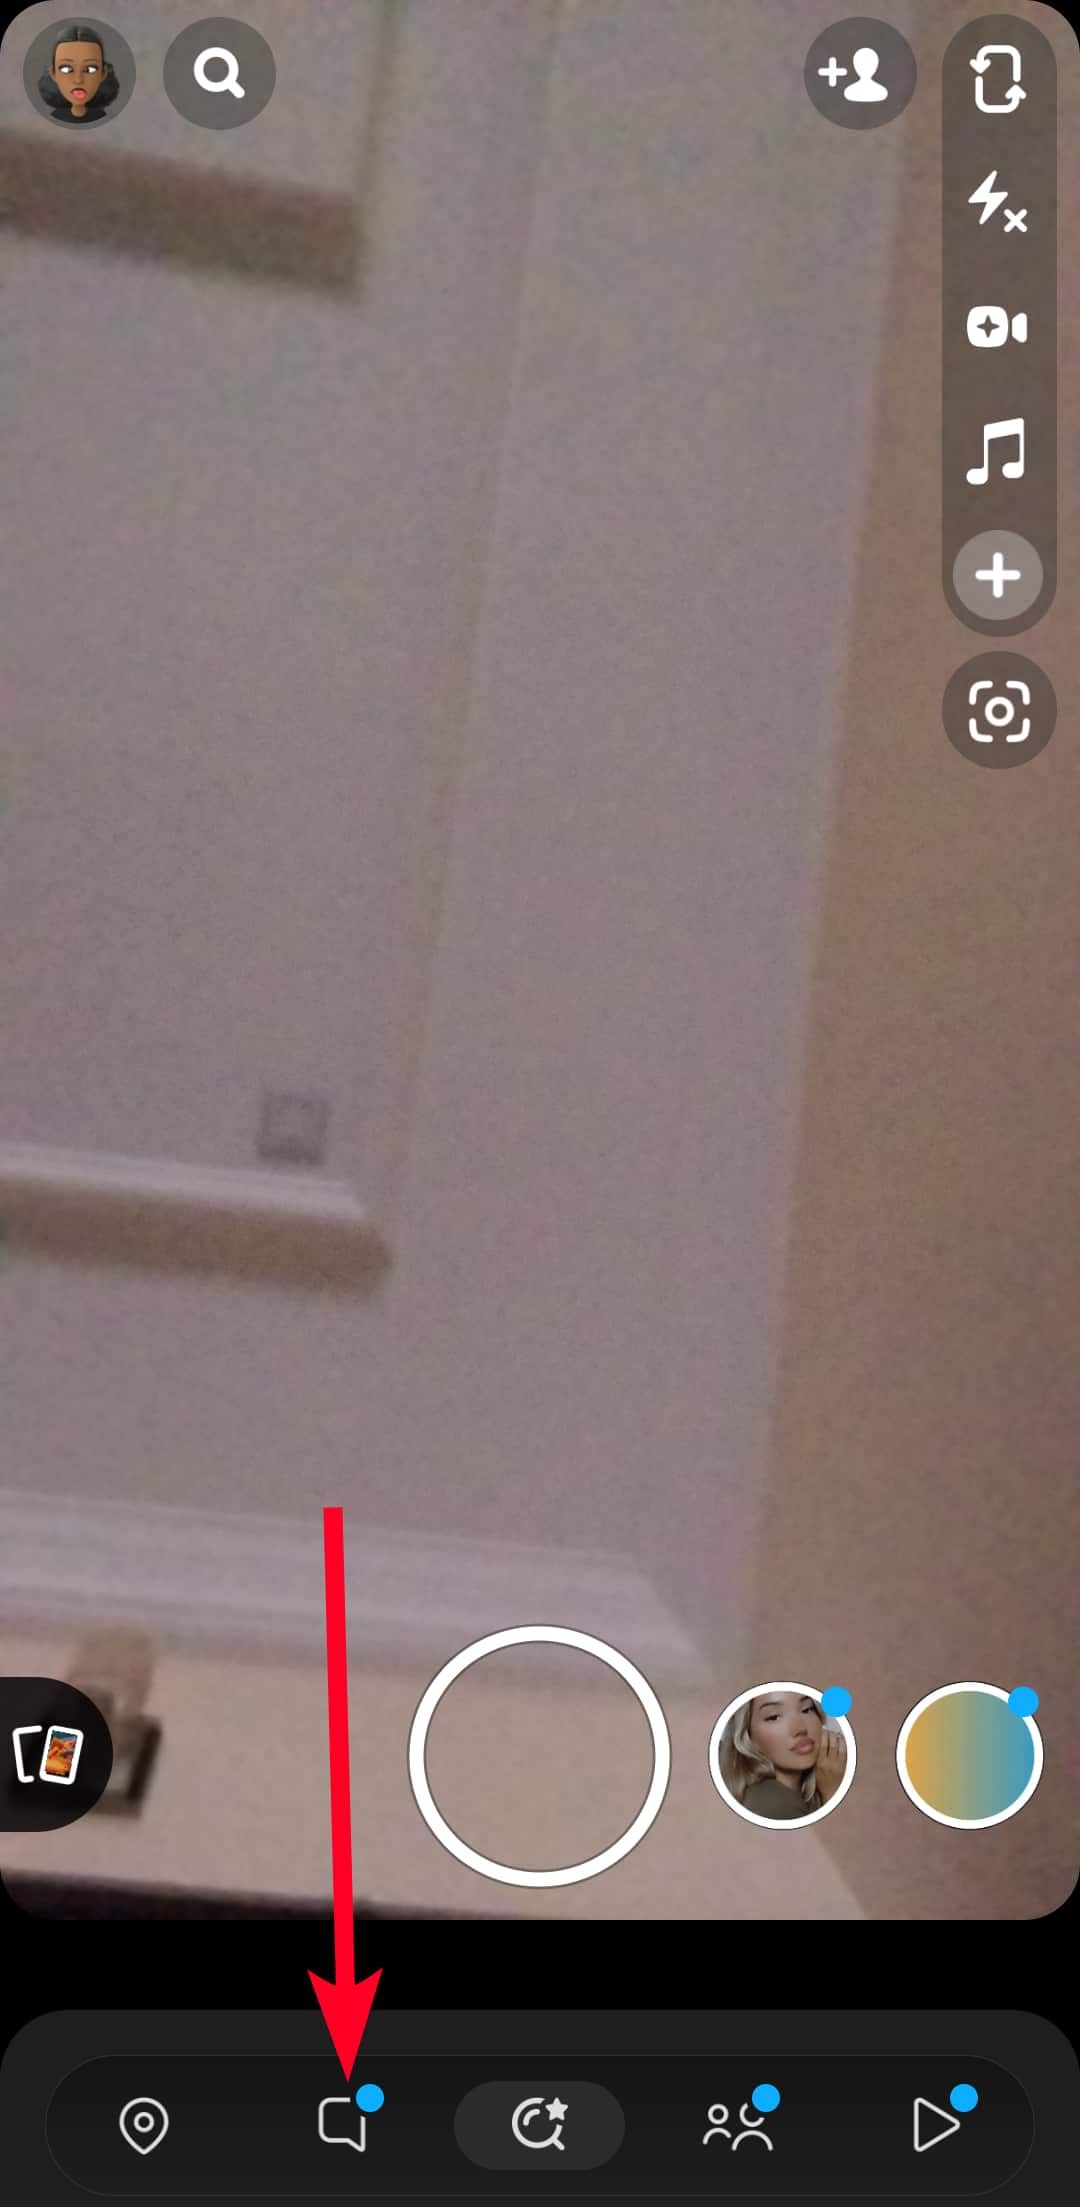 Selecionando o ícone de bate-papo na tela da câmera do Snapchat